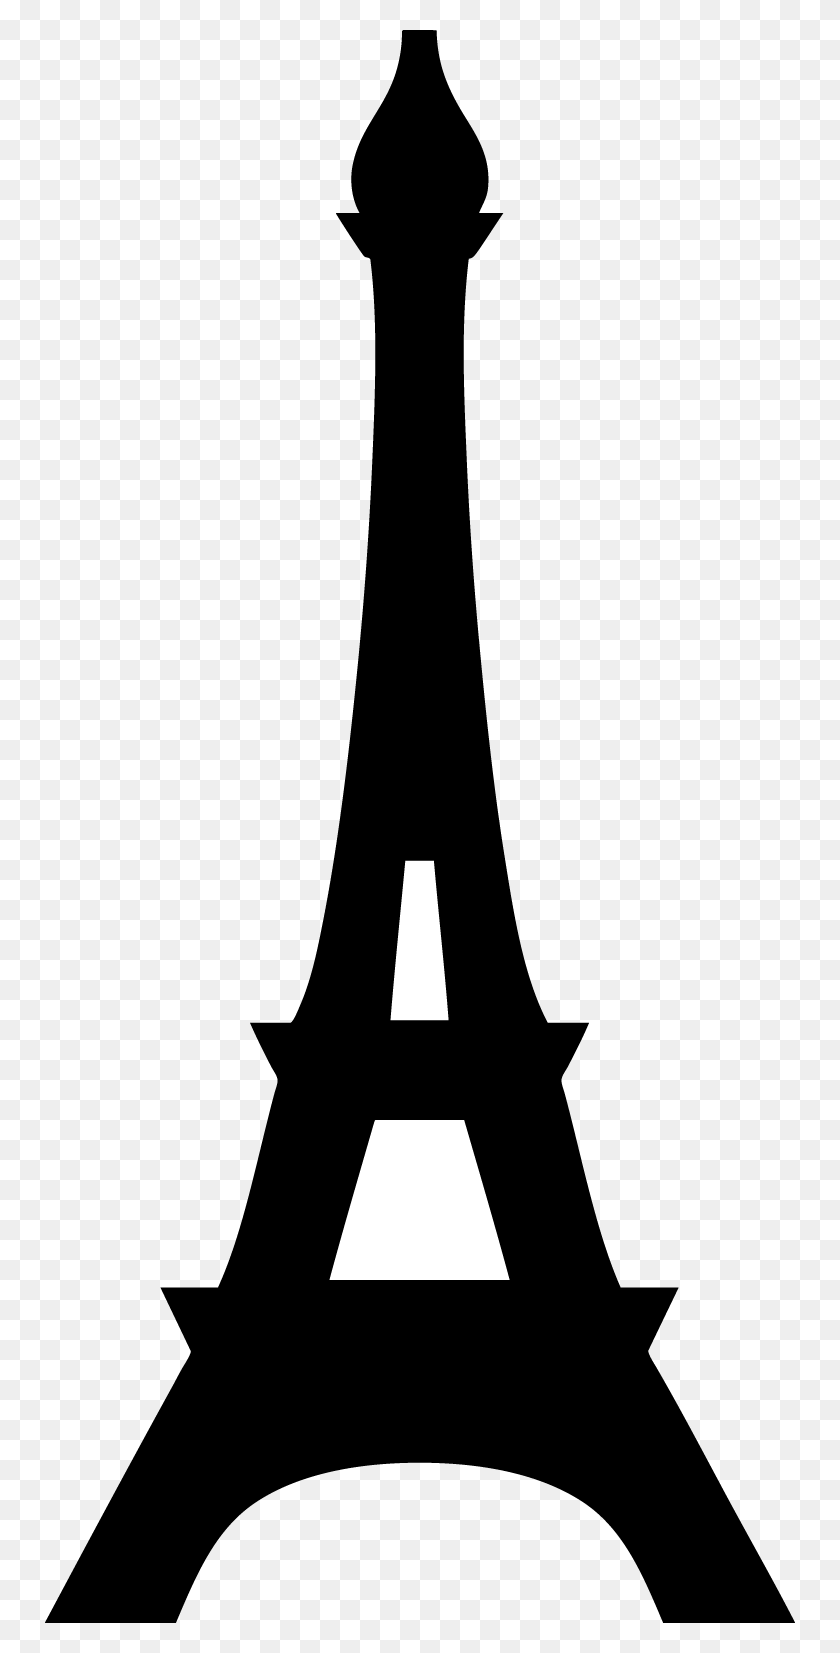 750x1593 Las Mejores Cosas Para Hacer En París - Clipart De La Torre Eiffel De París